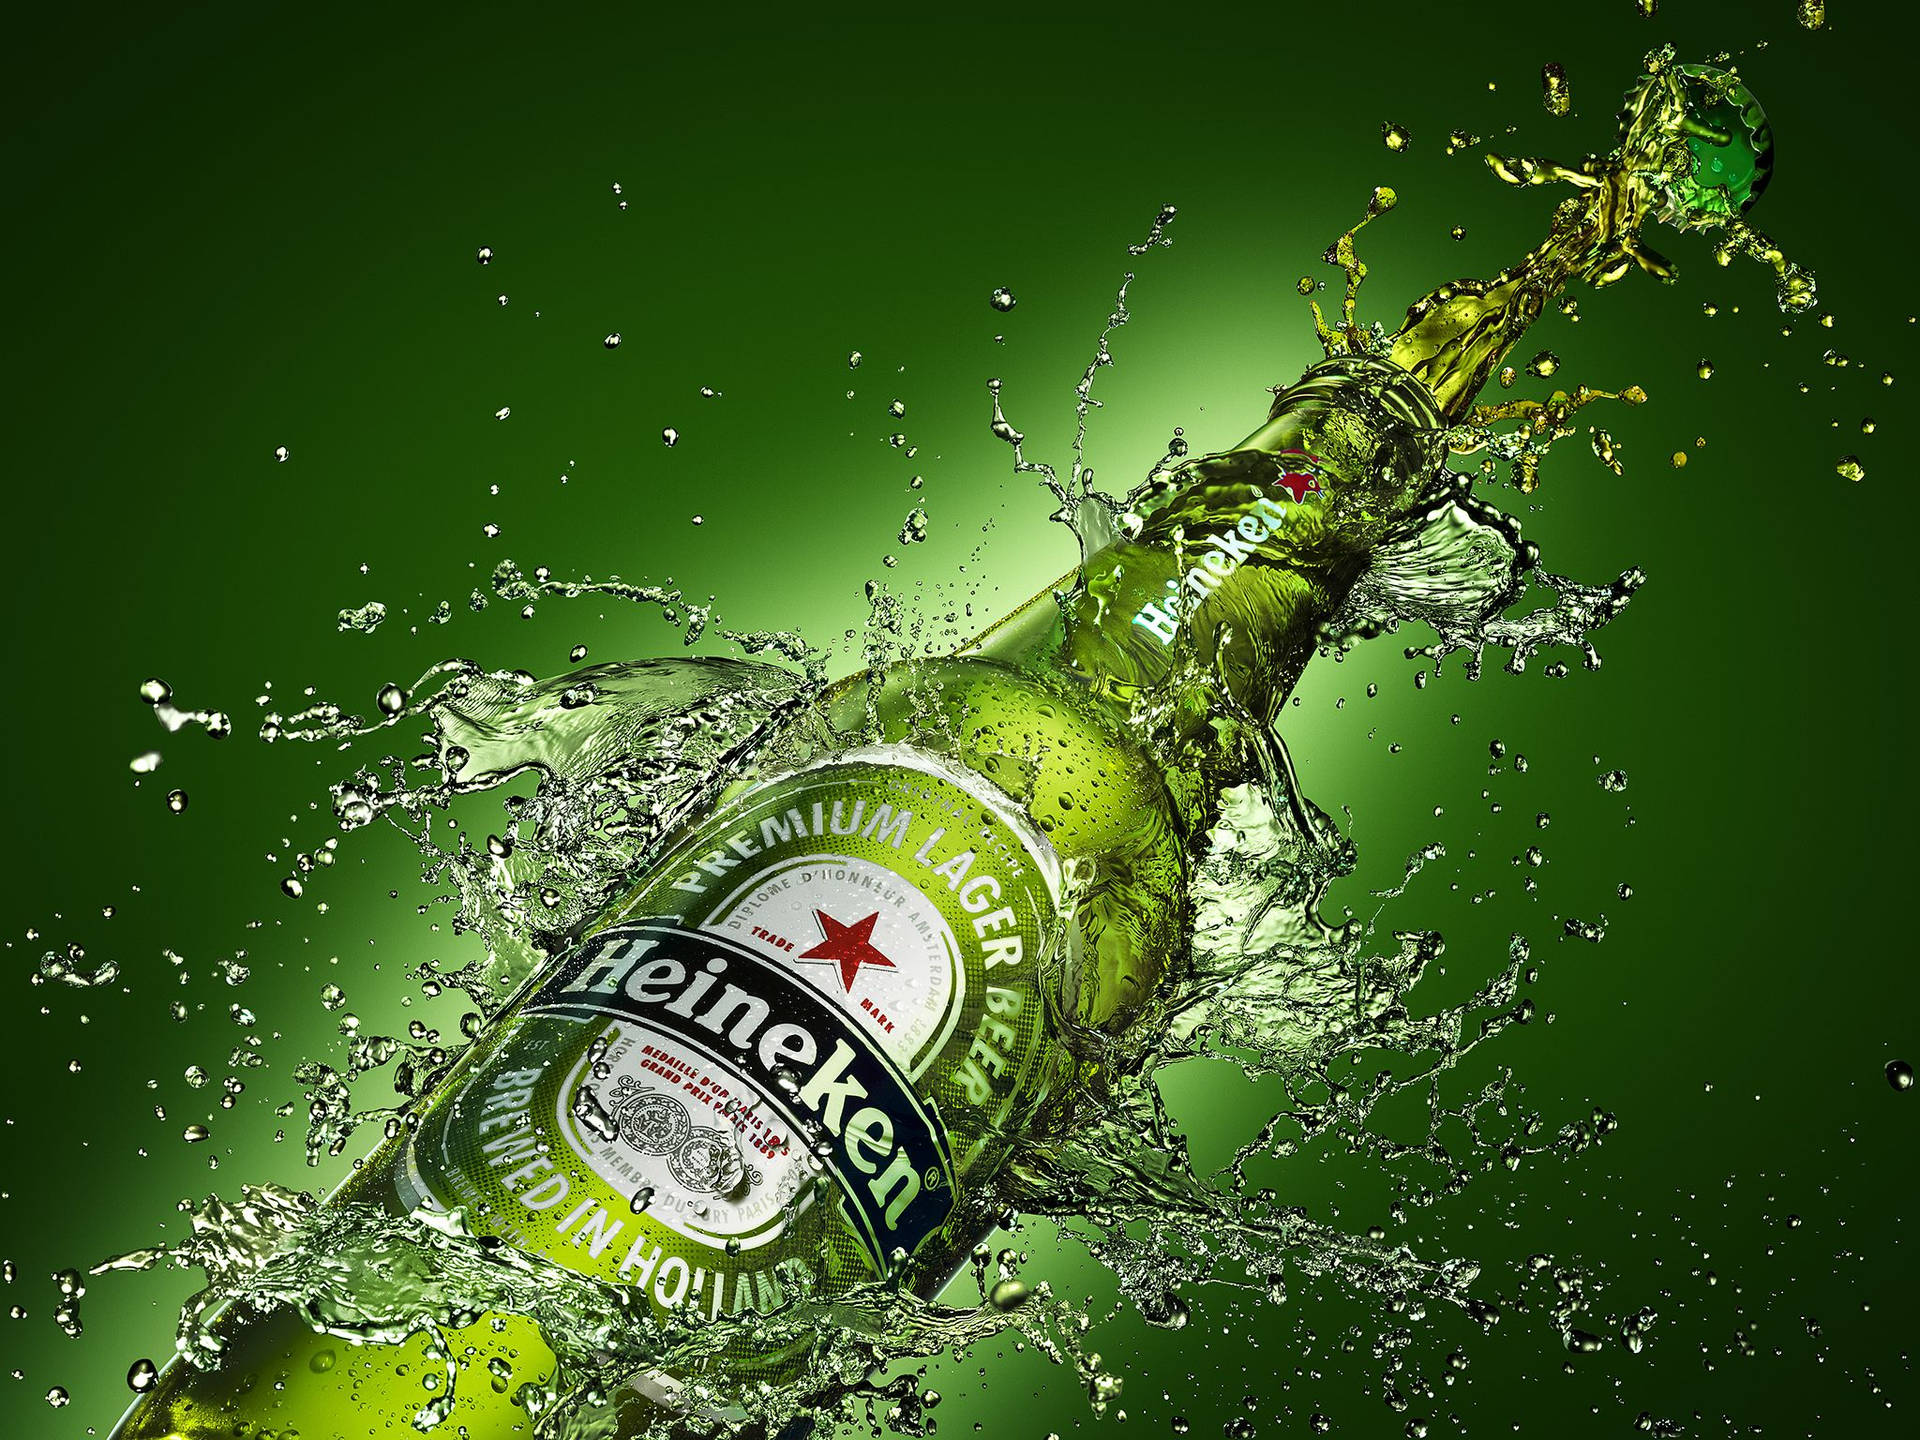 Efeitode Água Ondulante Da Cerveja Heineken Lager Na Sua Tela De Computador Ou Celular. Papel de Parede